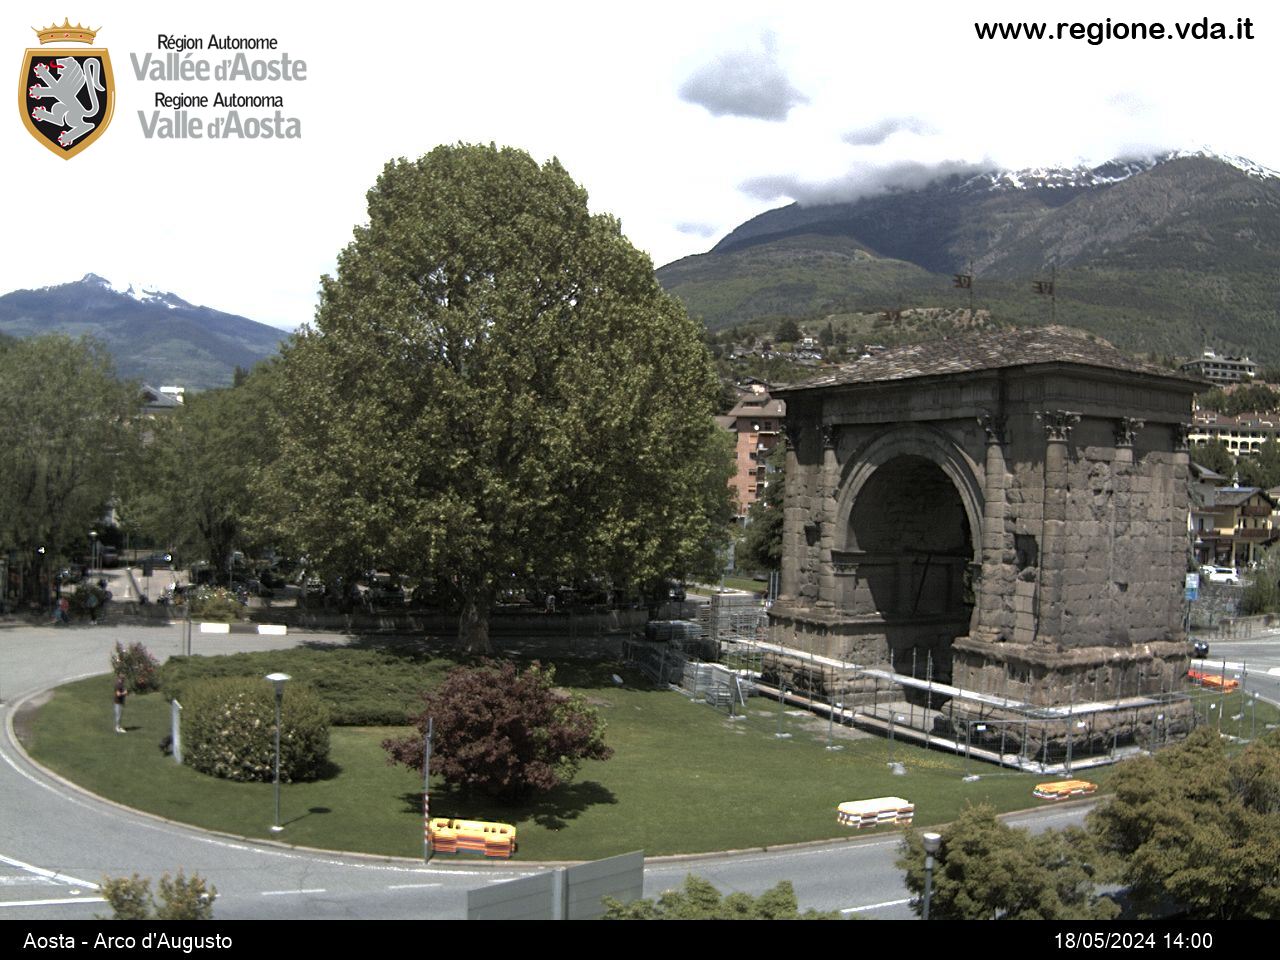 Aosta - Arco d'Augusto